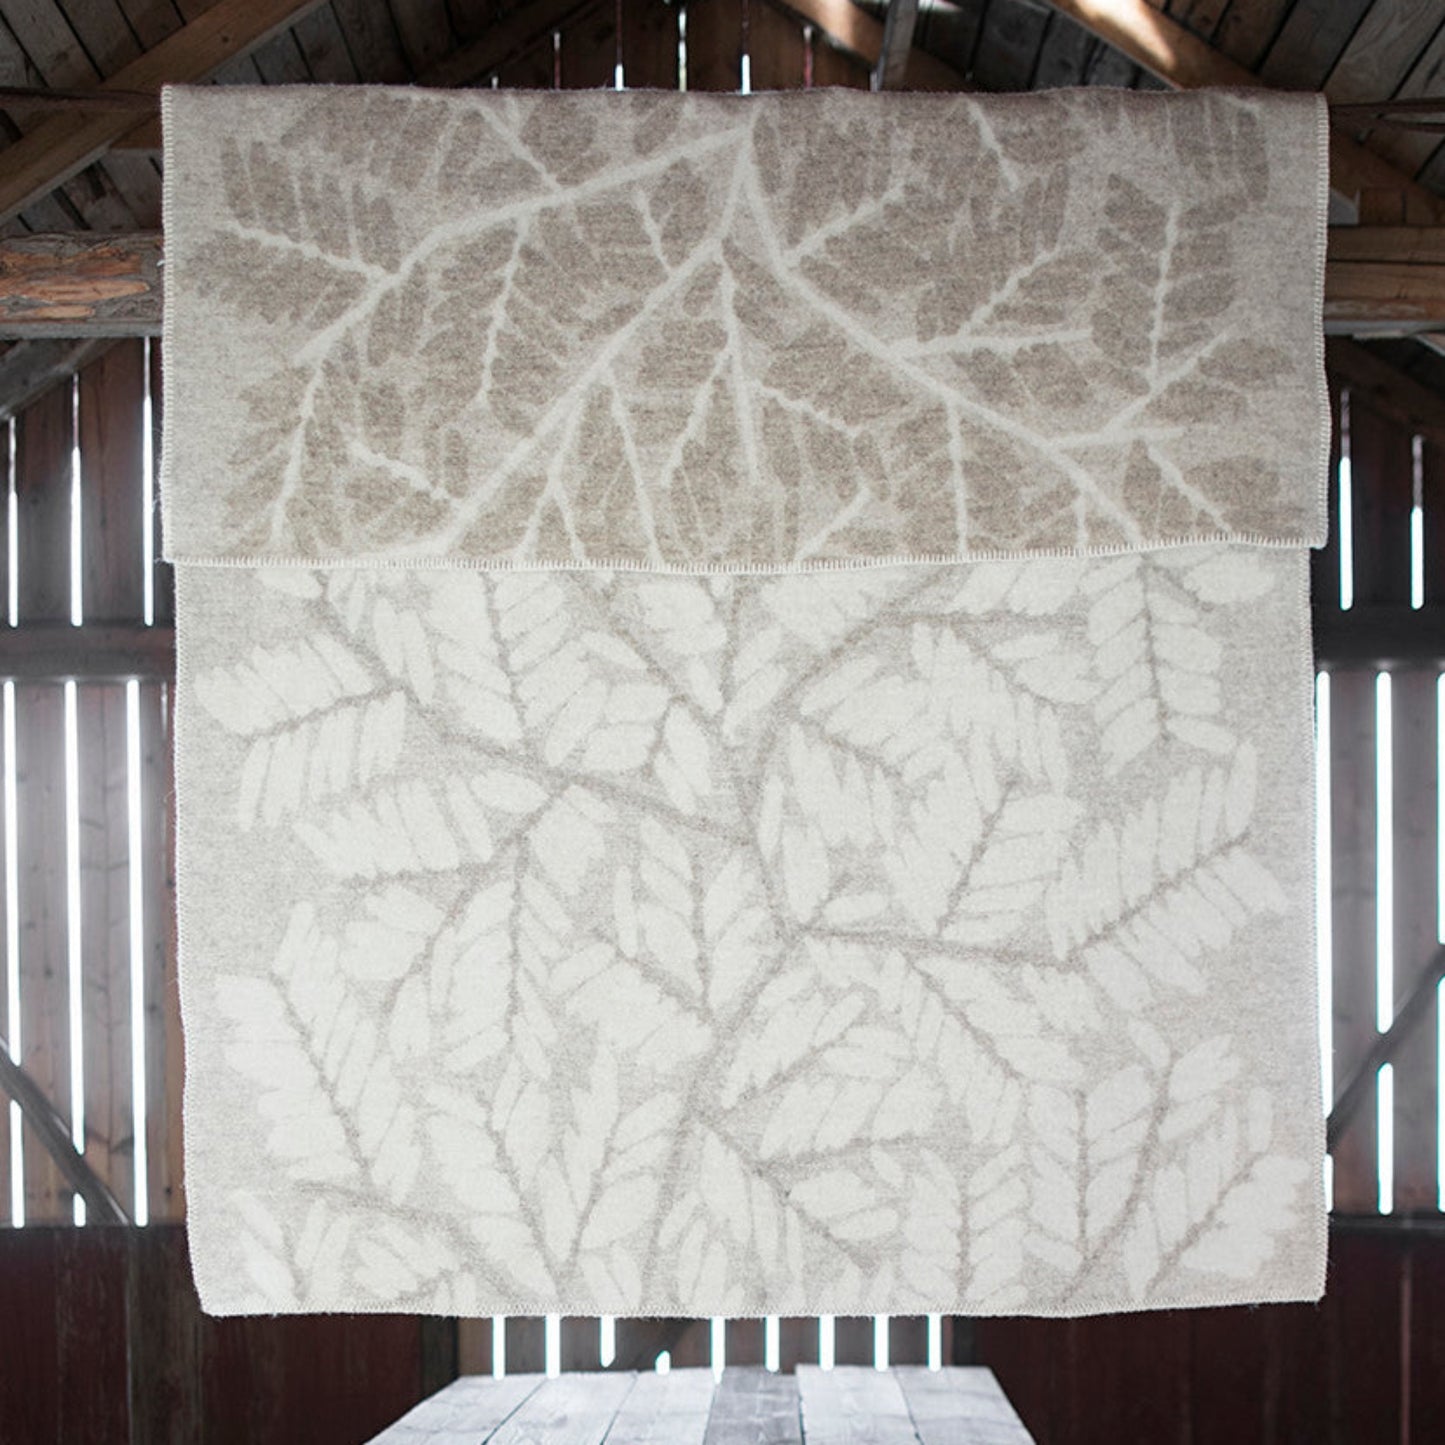 Verso Branch Wool Blanket 130x180cm, Beige-White (8709491523871)